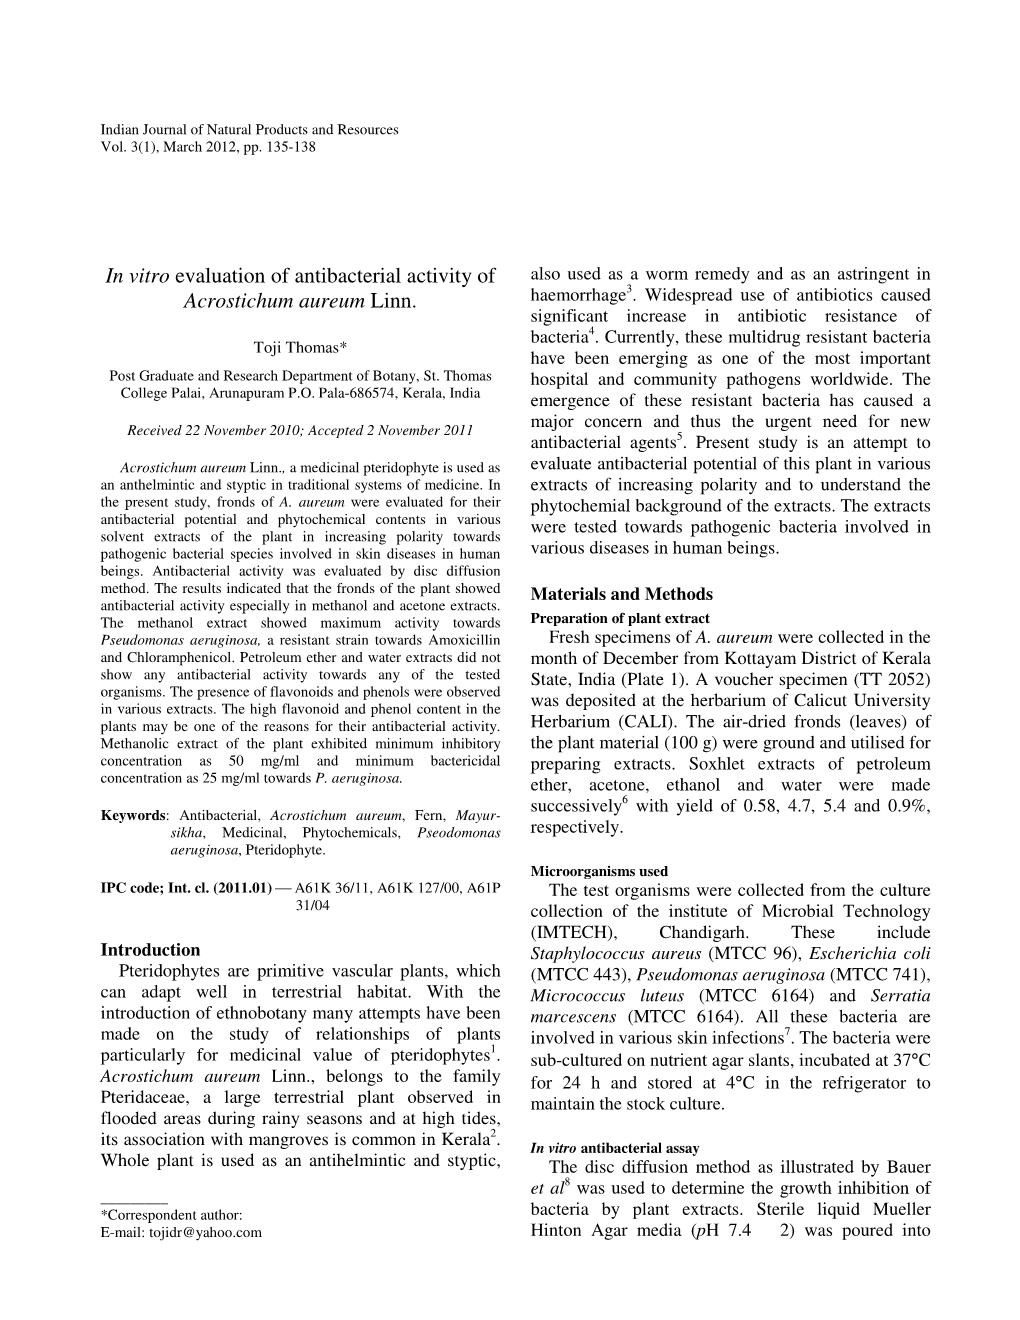 In Vitro Evaluation of Antibacterial Activity of Acrostichum Aureum Linn